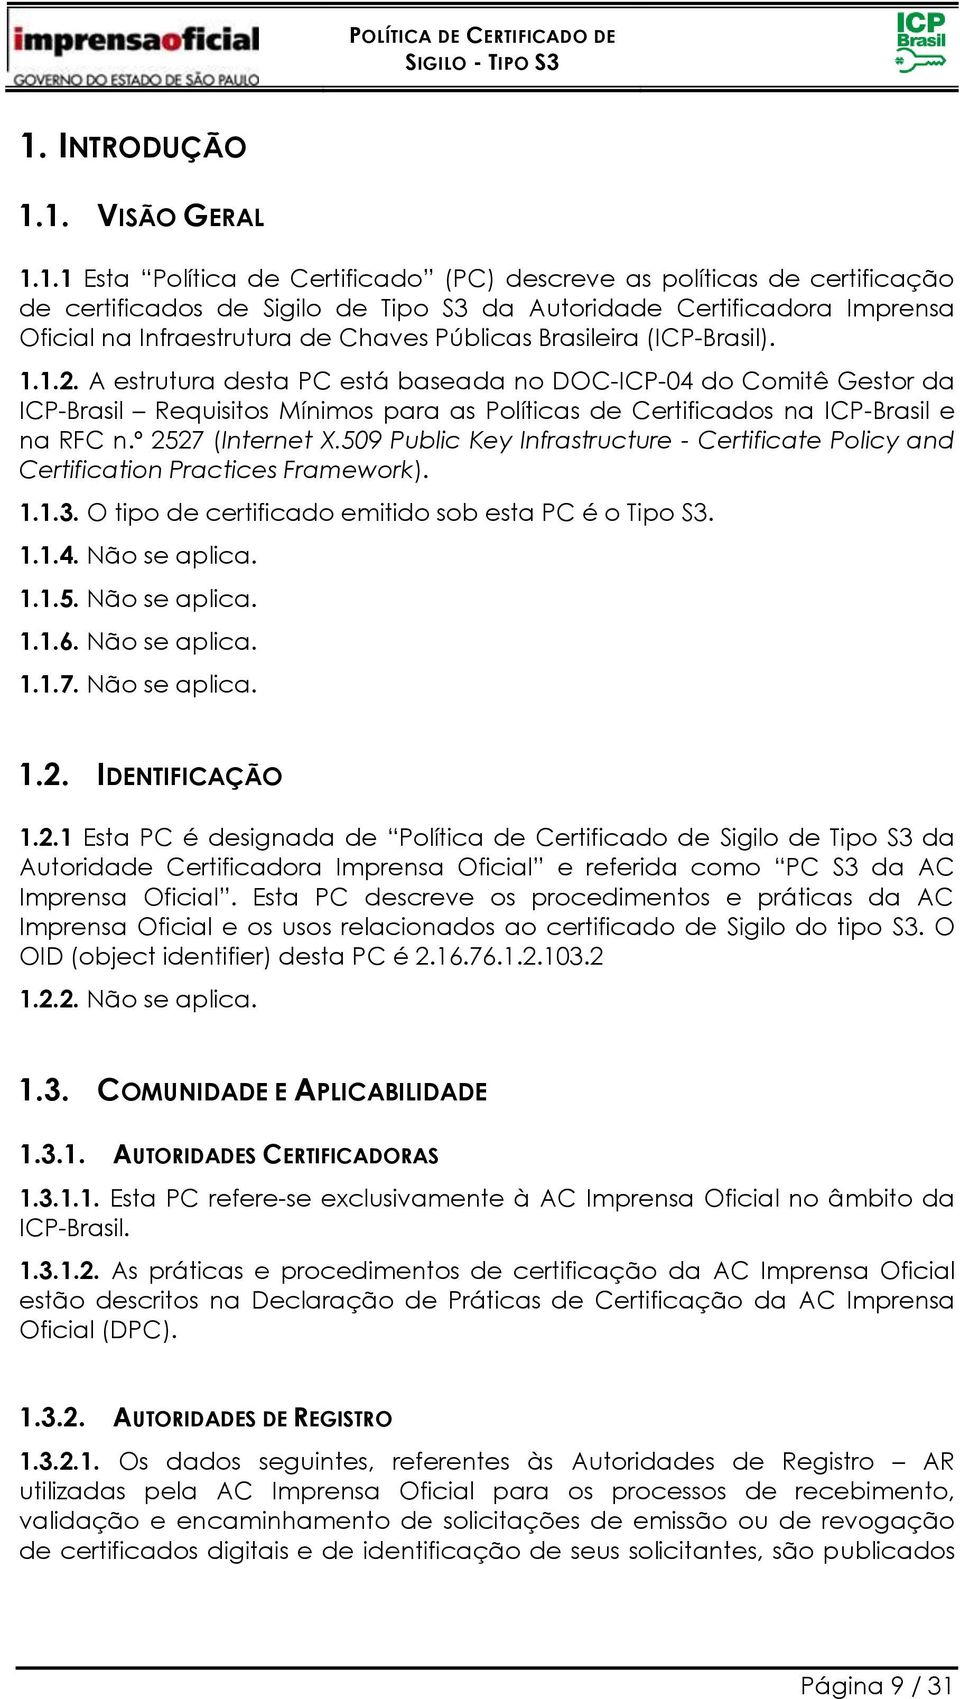 A estrutura desta PC está baseada no DOC-ICP-04 do Comitê Gestor da ICP-Brasil Requisitos Mínimos para as Políticas de Certificados na ICP-Brasil e na RFC n.º 2527 (Internet X.